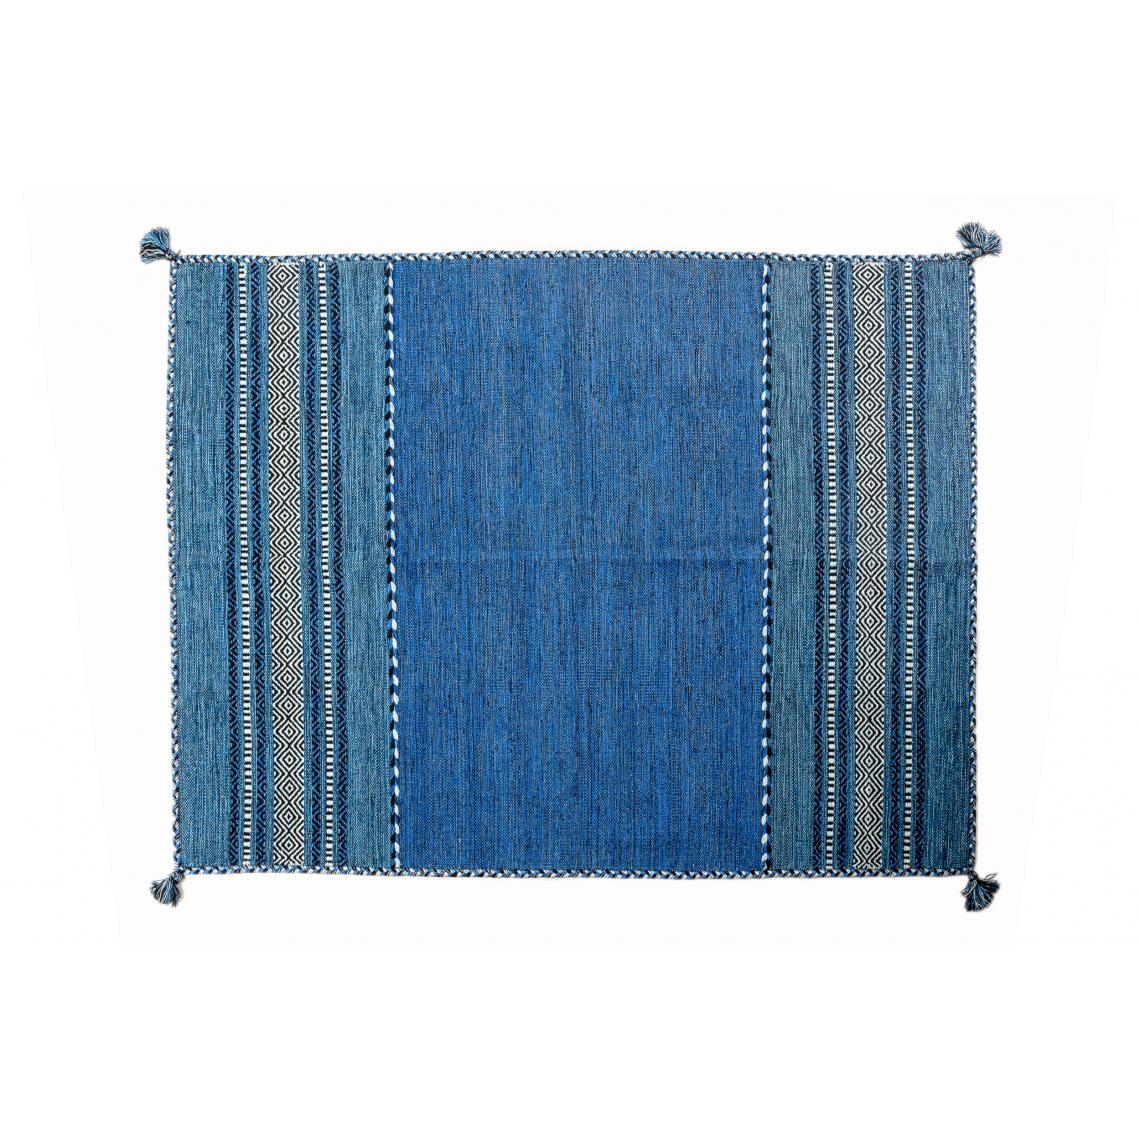 Alter - Tapis moderne Kansas, style kilim, 100% coton, bleu, 170x120cm - Tapis